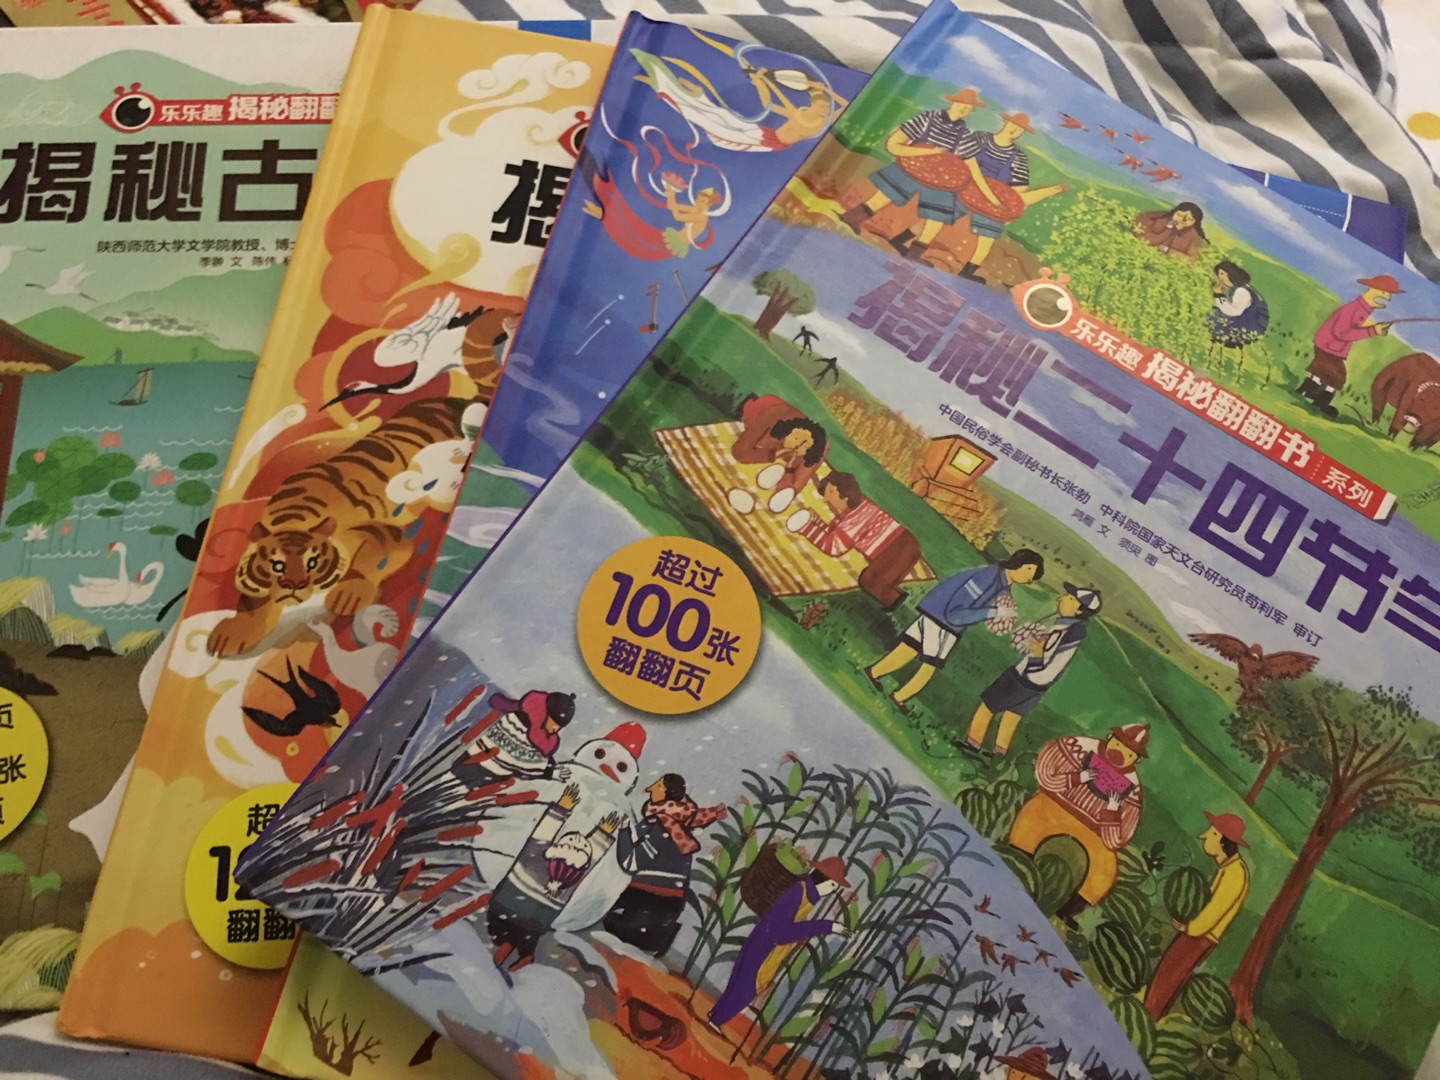 这套书非常值得购买，孩子对于中国传统节气，文字，古诗词已经丝绸之路都应该有一些了解，这套书用生动的文字和可爱的卡通深入浅出介绍了这四个方面的内容，作为儿童绘本，我们不能一味只看国外的一些绘本，毕竟国外绘本都介绍圣诞节，万圣节等，对于中国的孩子又不在国外生活的看起来有些尴尬，相比之下，这类传统文化的阅读绘本更应该让孩子多看。